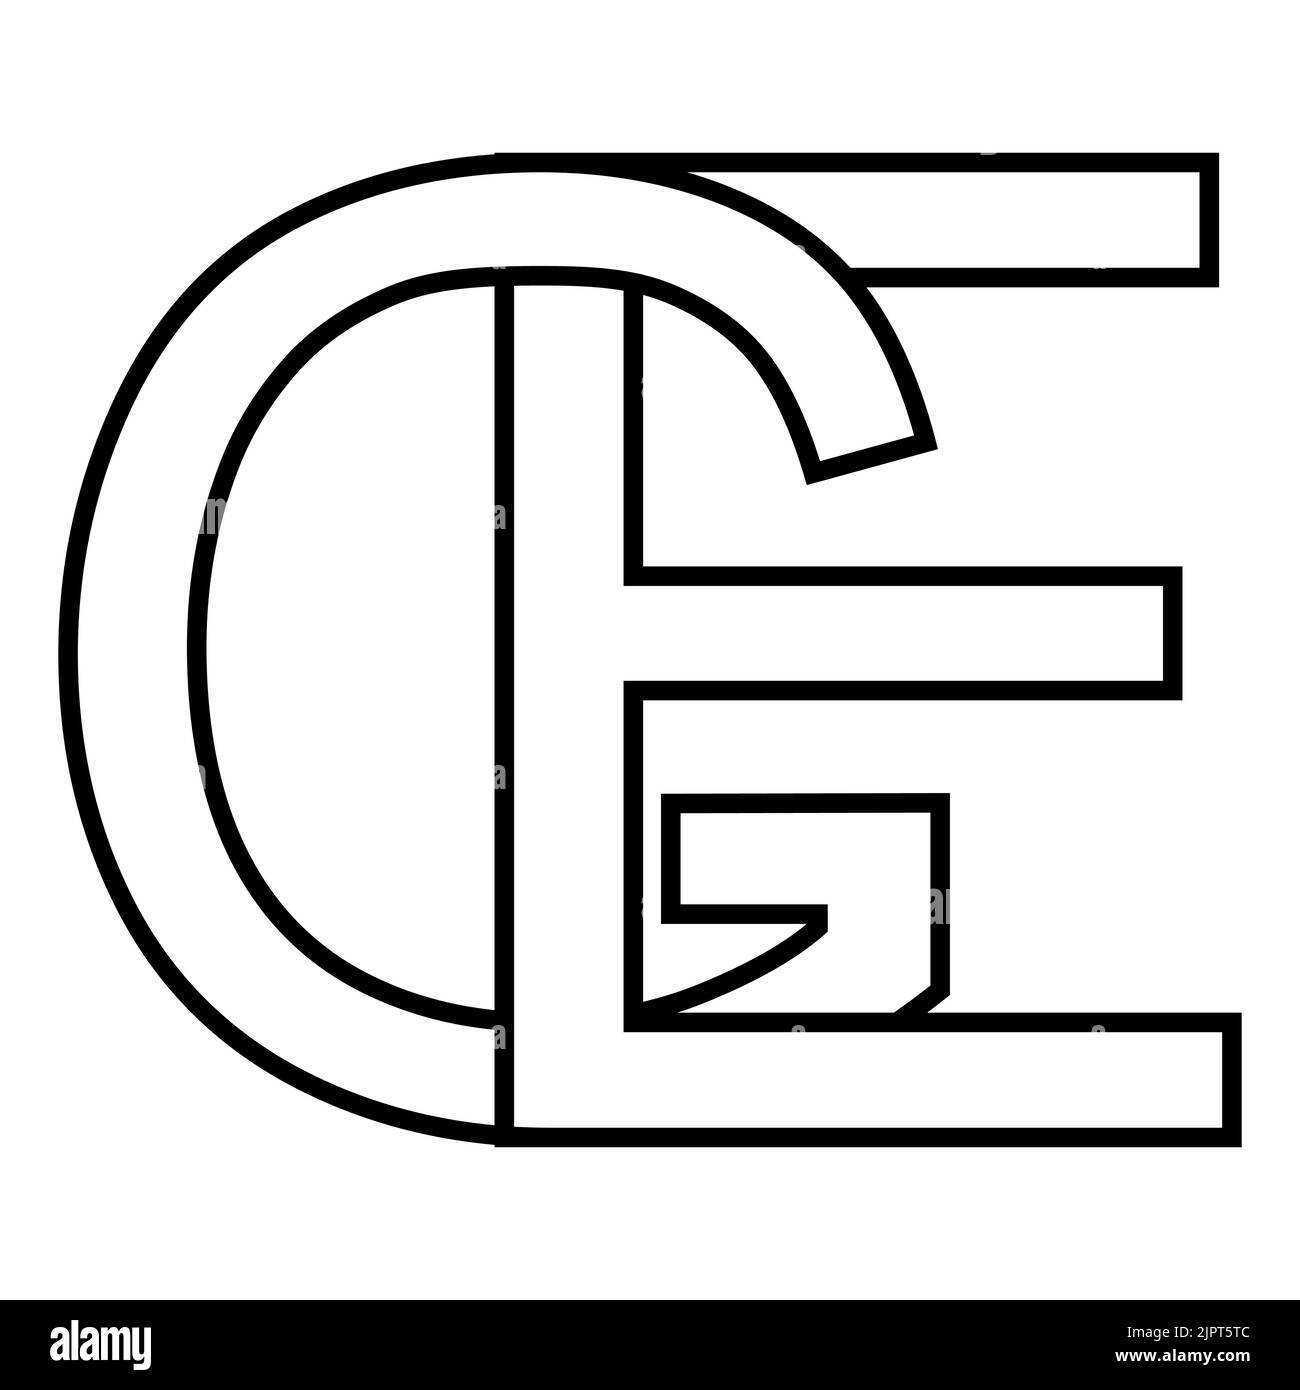 Logo signe ge EG icône nft lettres entrelacées g e Illustration de Vecteur